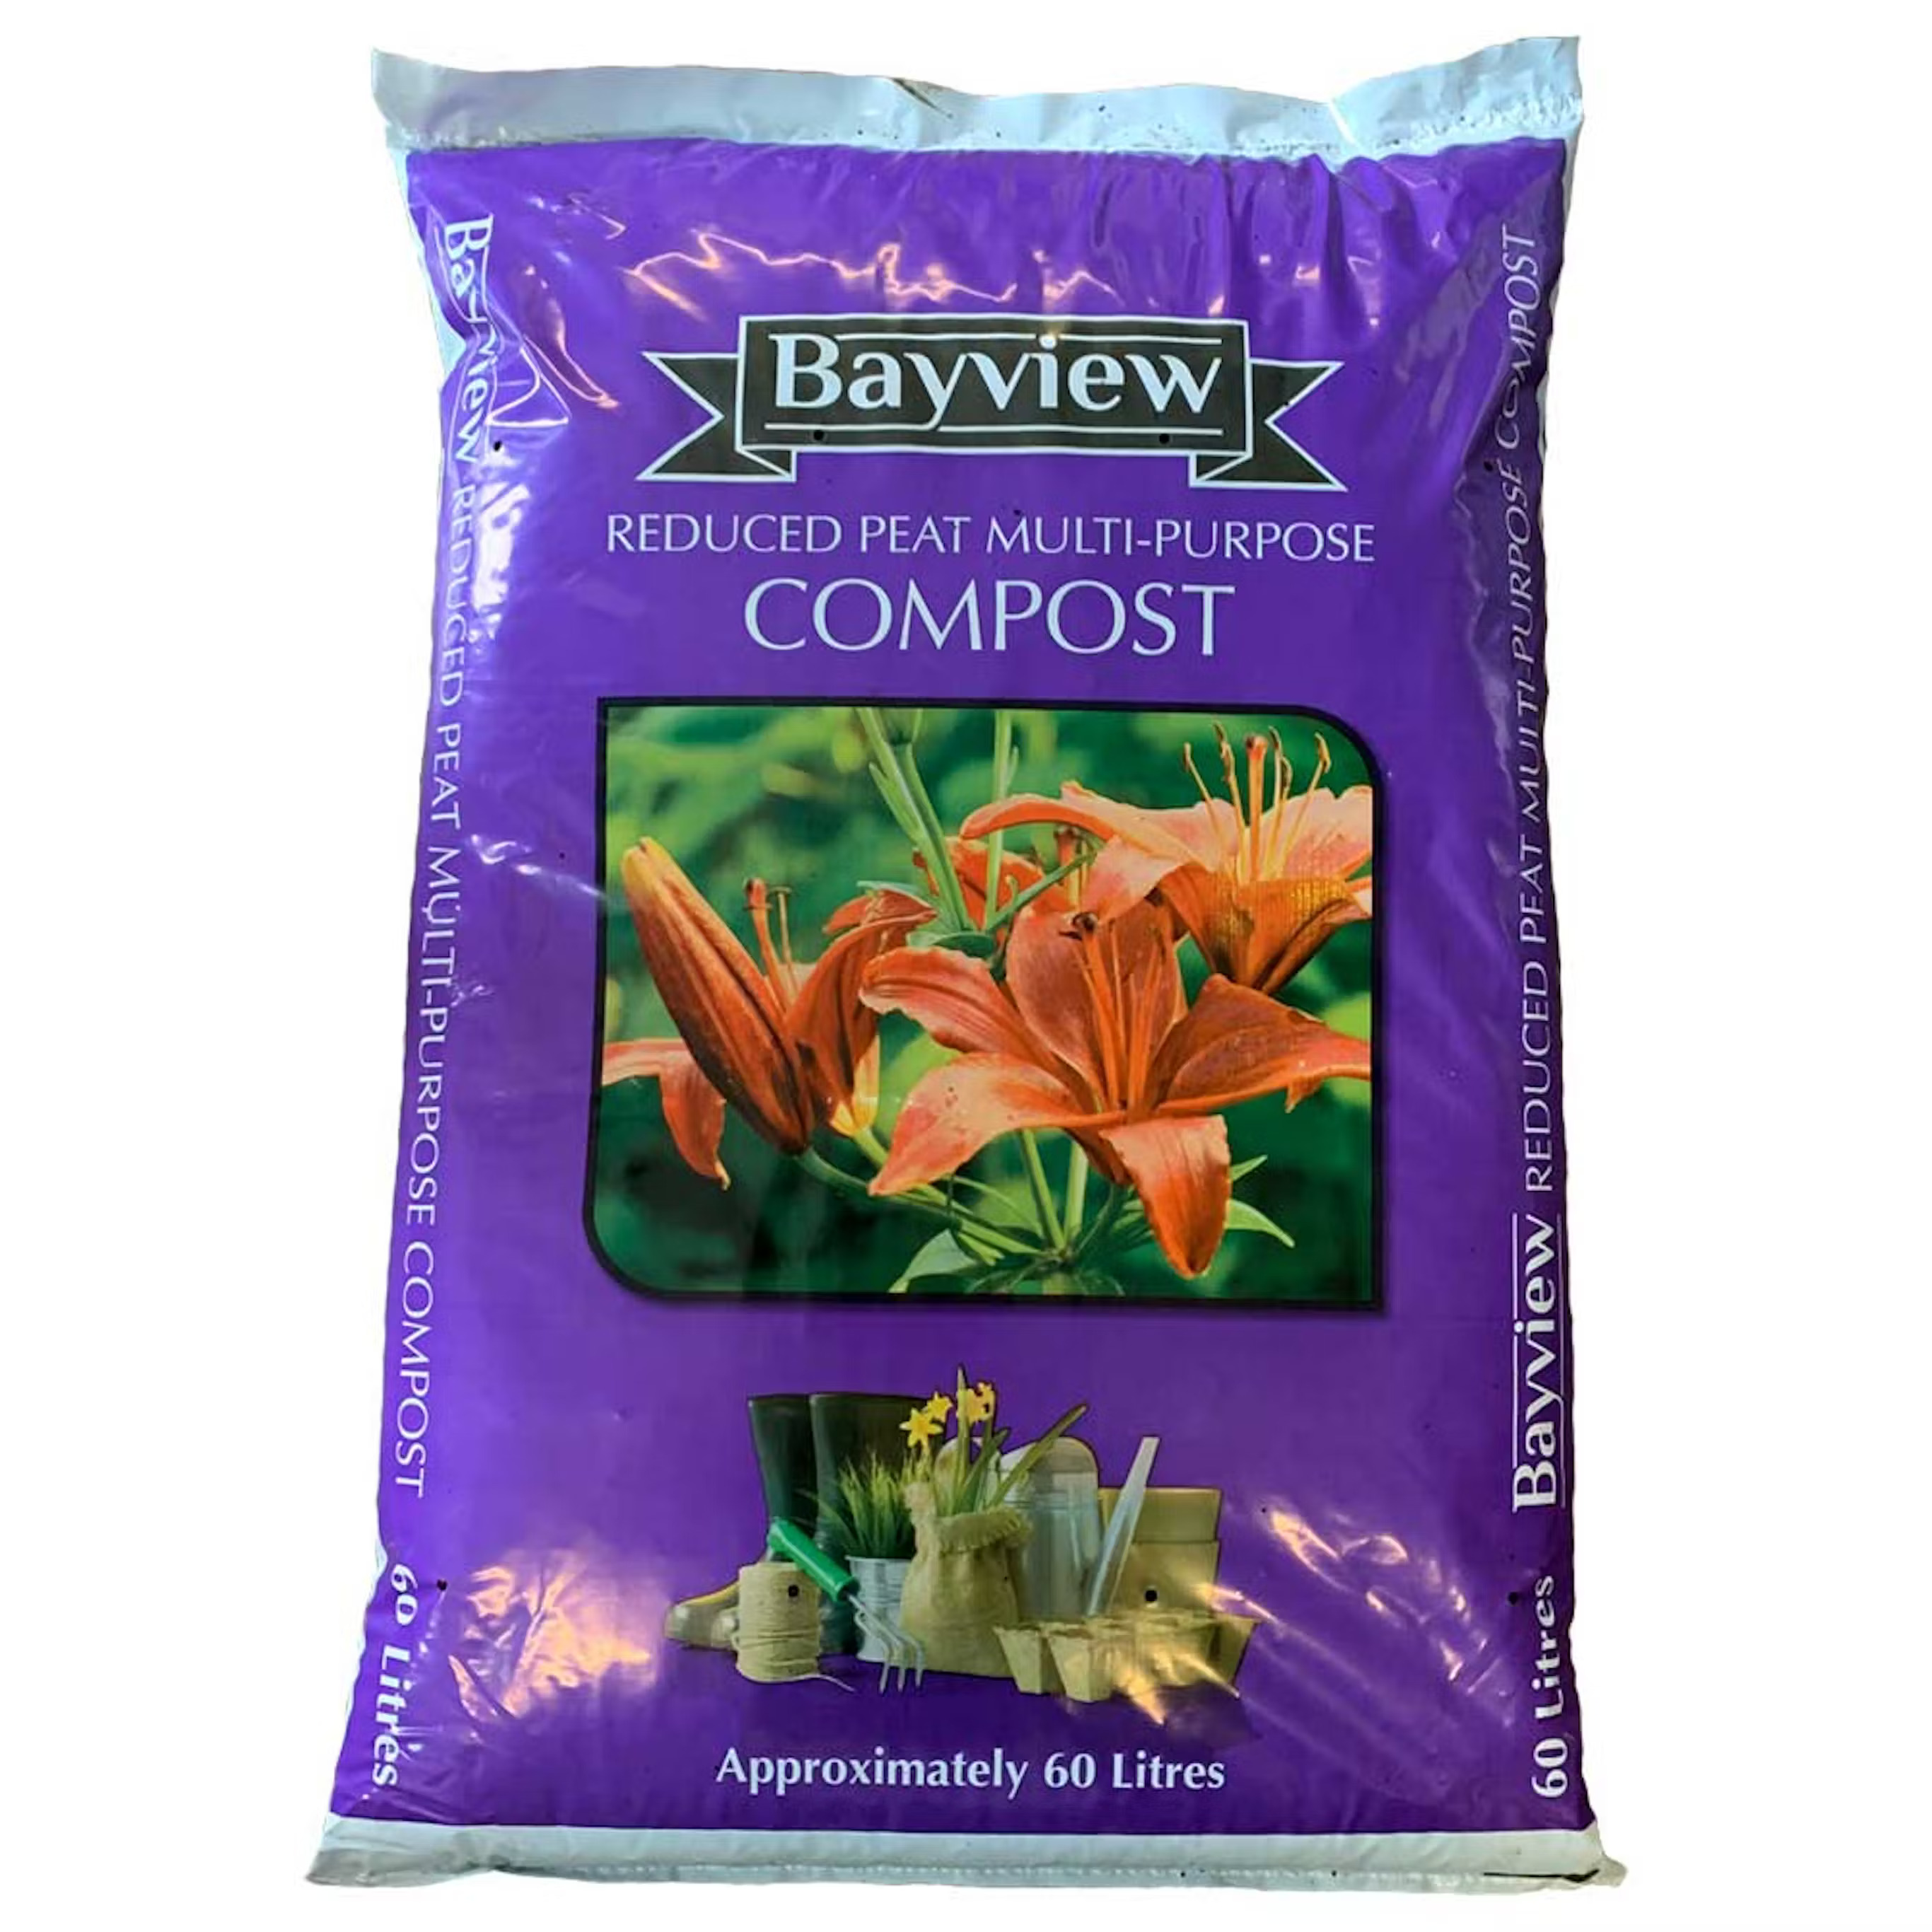 Bayview Multi-Purpose Compost